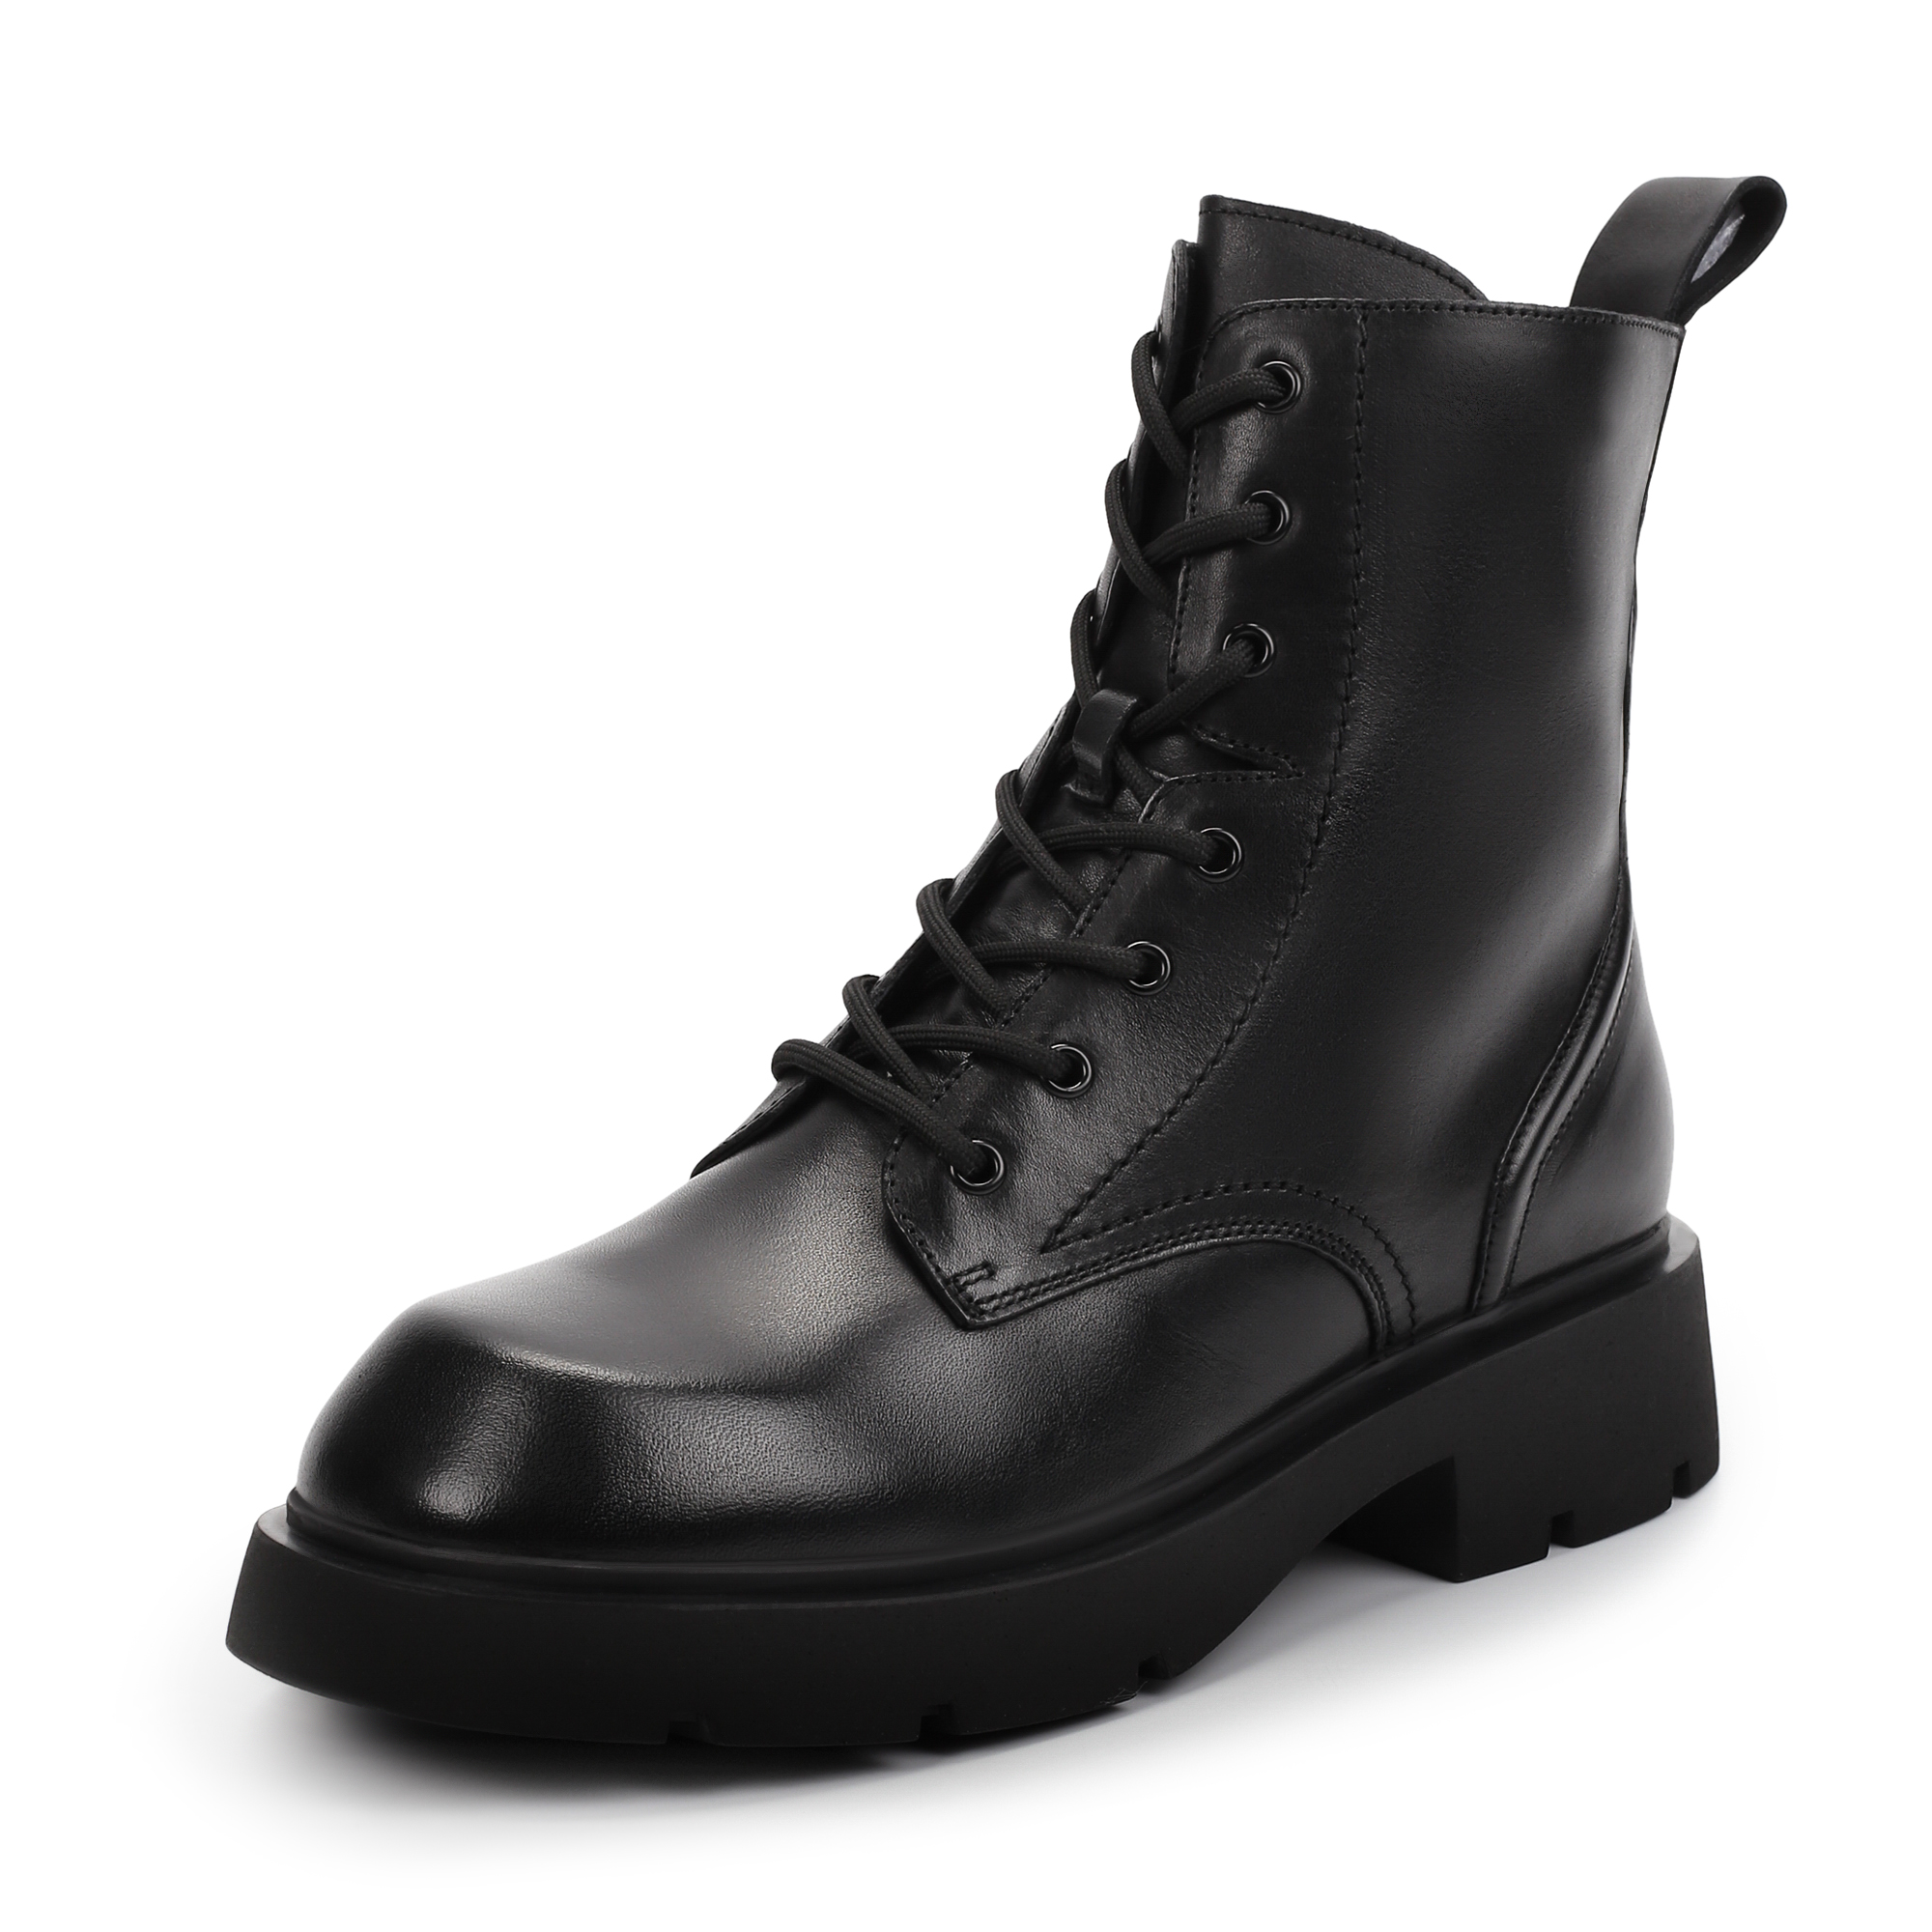 Ботинки Thomas Munz 058-3410A-2102, цвет черный, размер 37 - фото 2